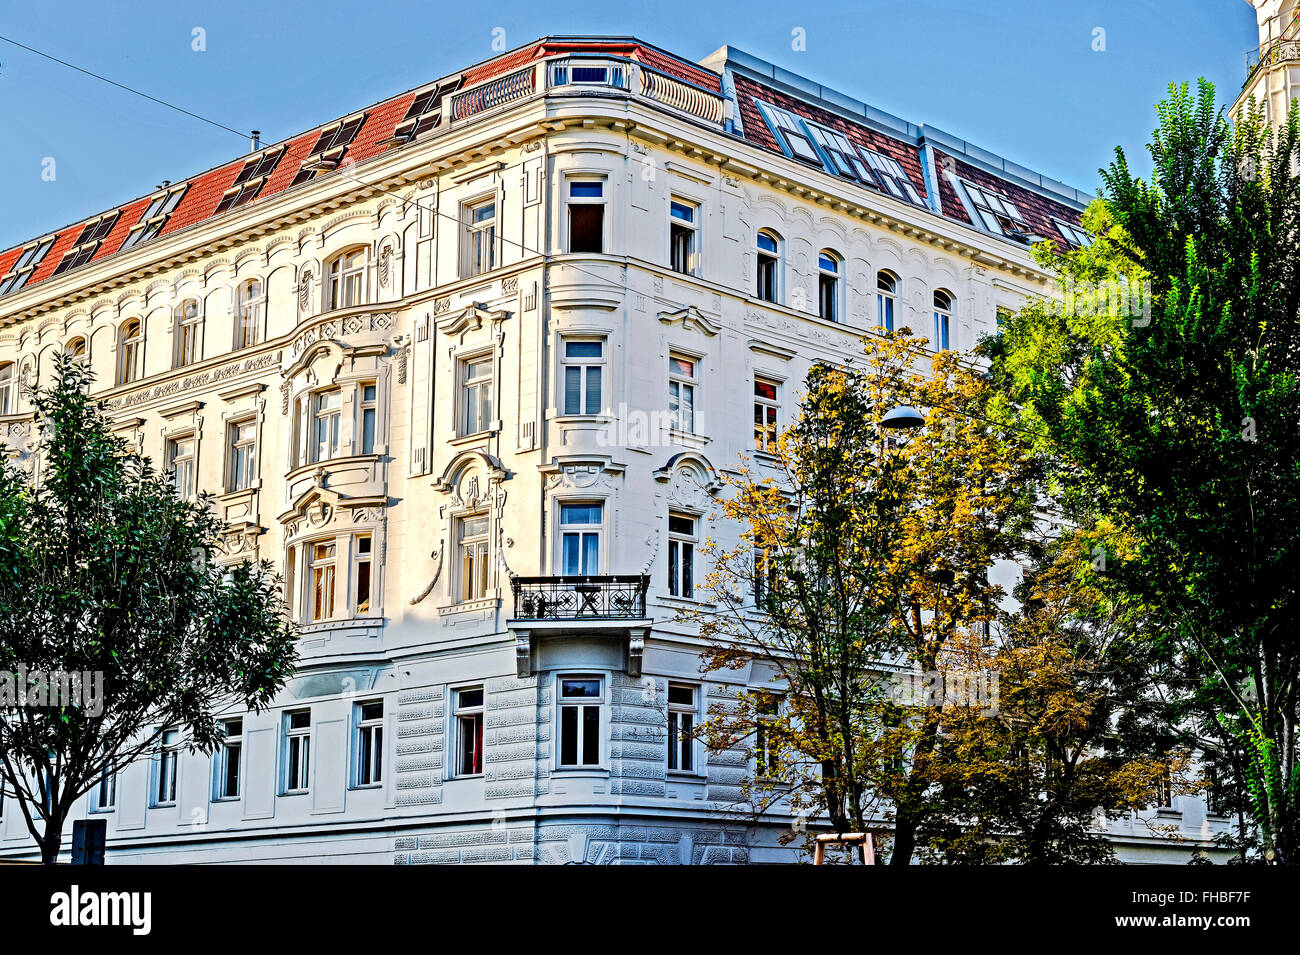 Vornehme mietshäuser in Wien, Alsergrund, 9. Bezirk; tenements in vienna, imperial era Stock Photo